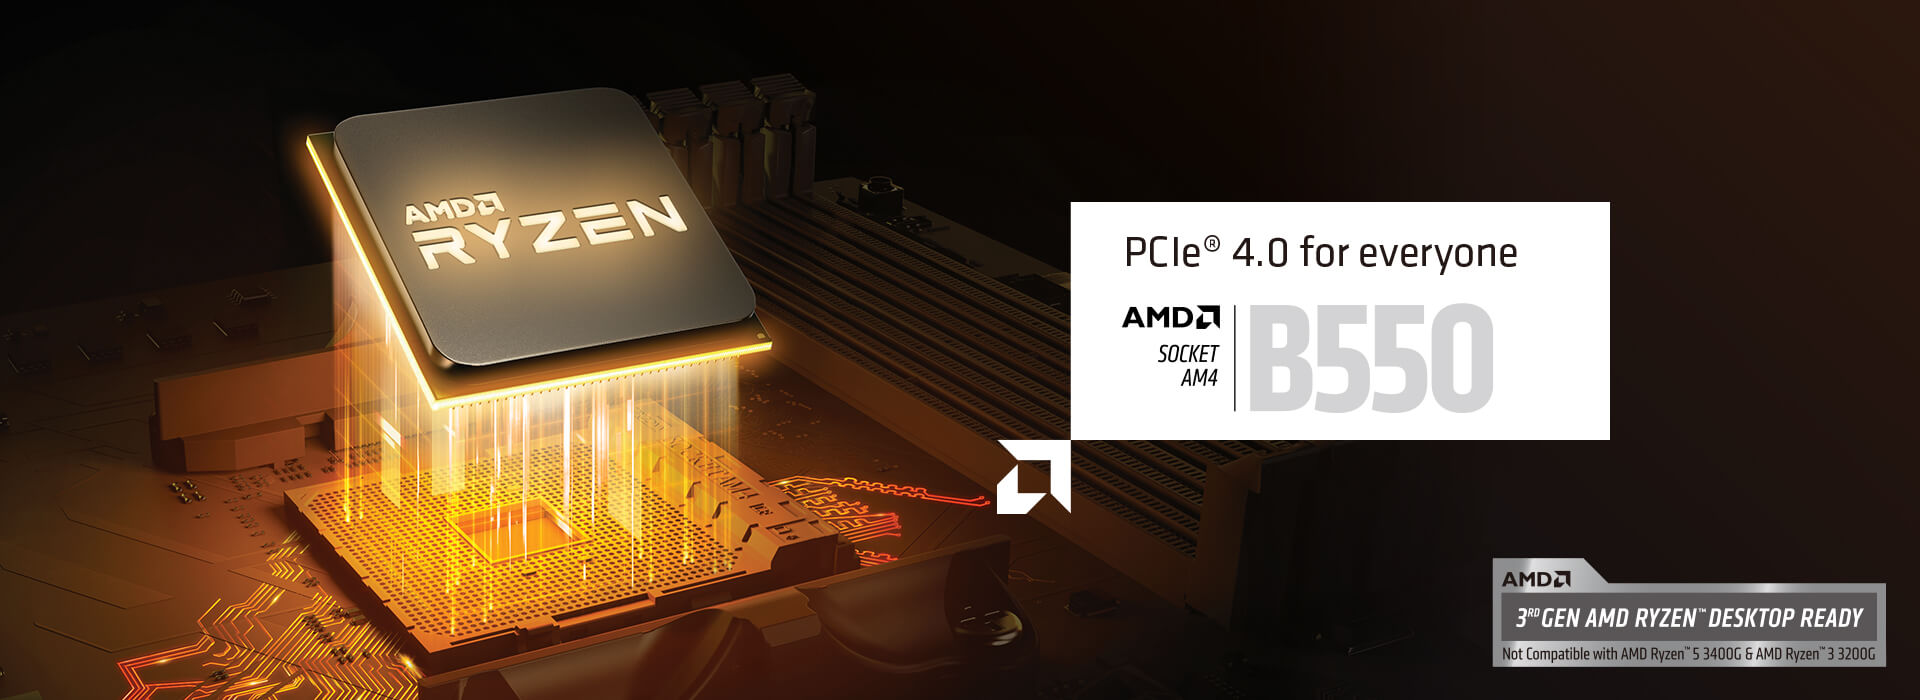 PCIe 4.0 voor iedereen. AMD SOCKET AM$ B550. 3e GEN. AMD RYZEN DESKTOP GEREED. Niet compatibel met AMD Ryzen 5 3400G & AMD Ryzen 3 3200G.